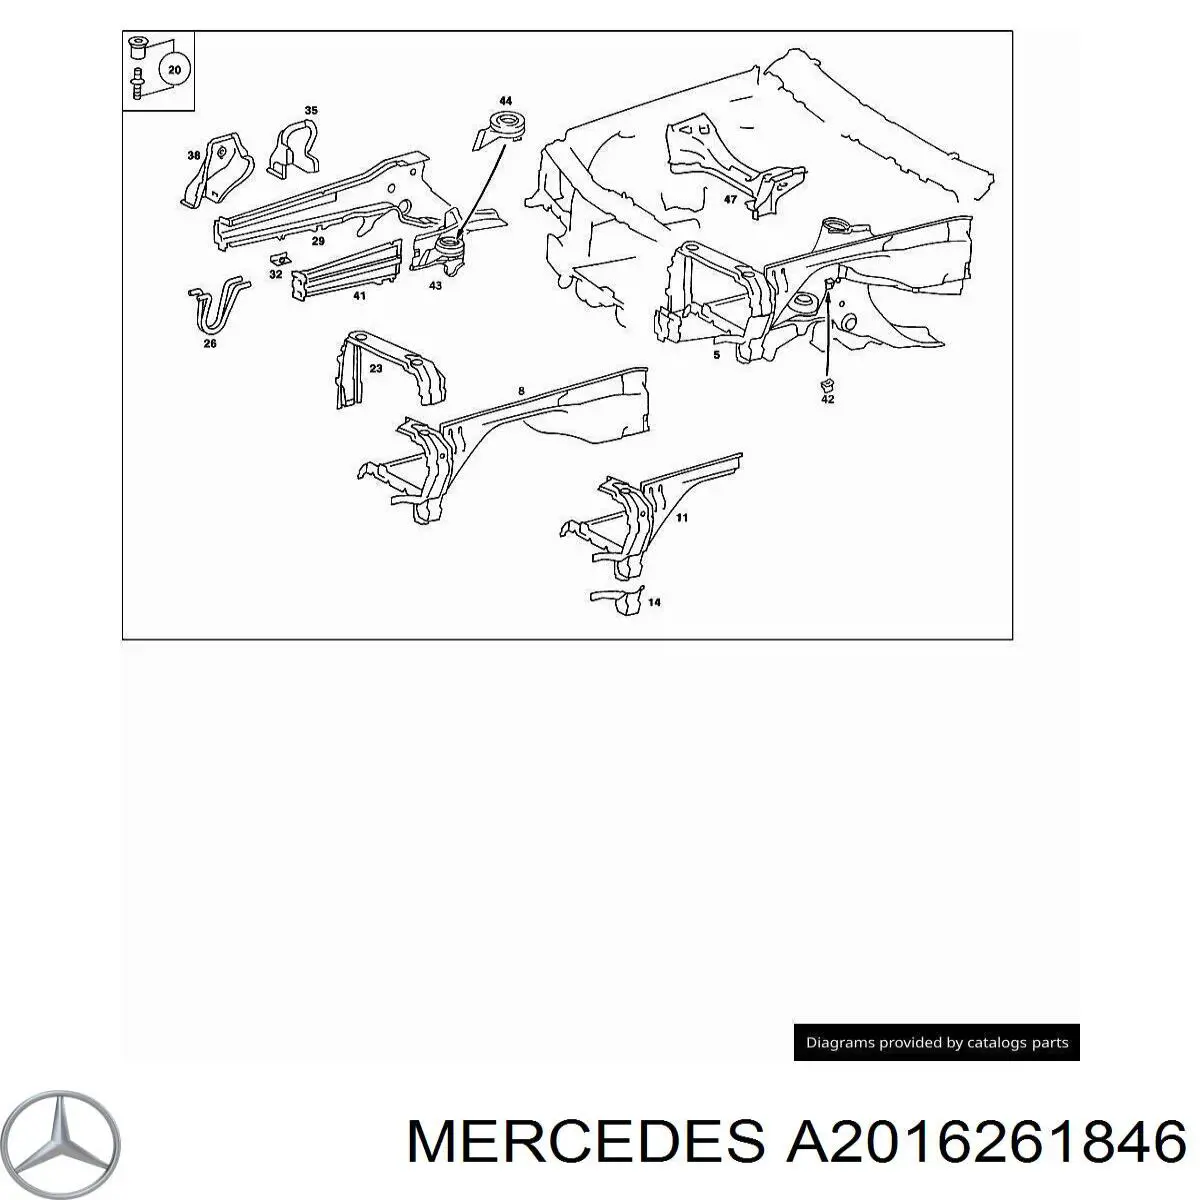 Soporte de radiador derecha para Mercedes C (W201)